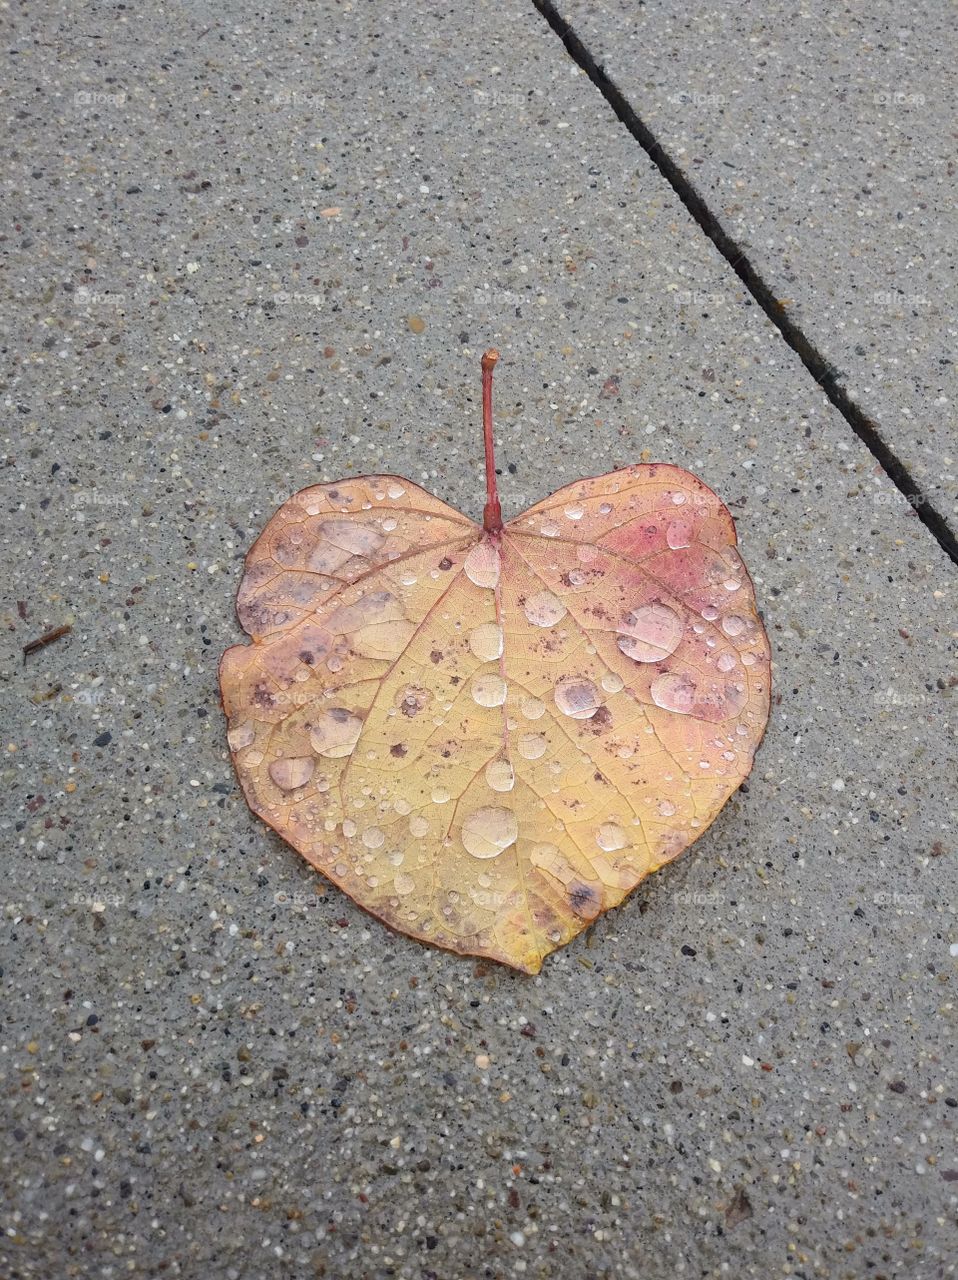 Leaf with rain